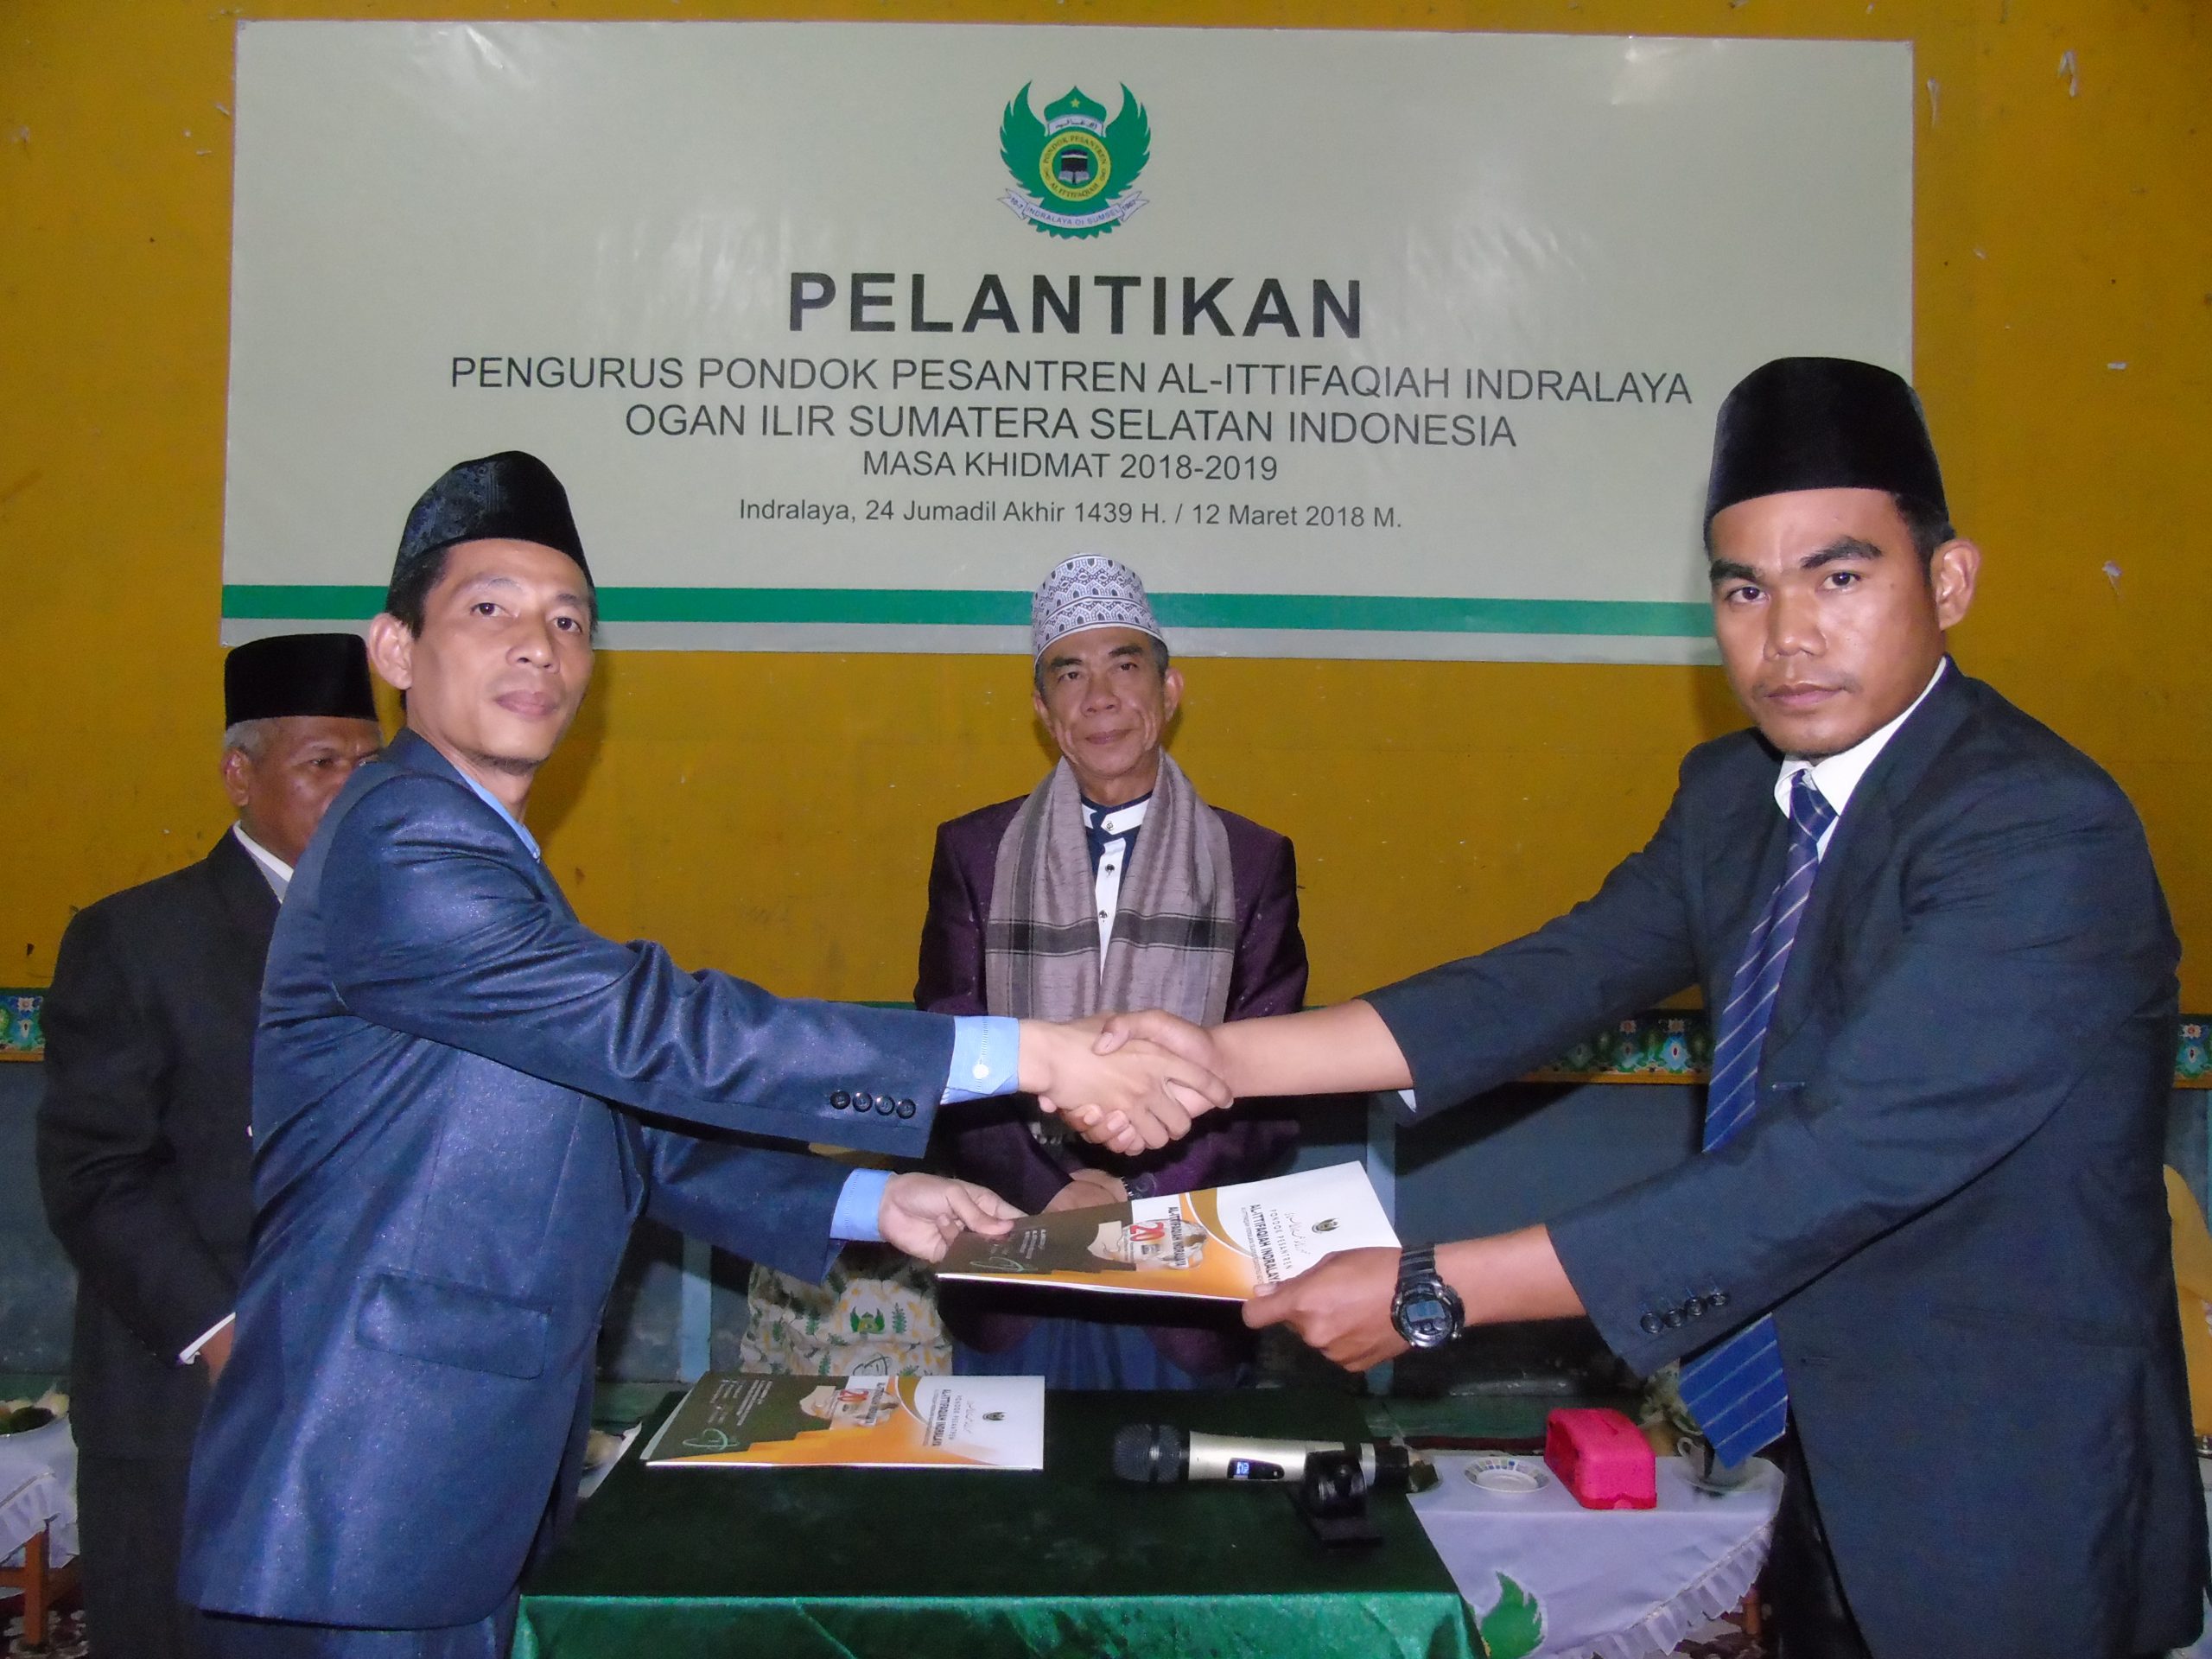 Susunan Pengurus Pondok Pesantren Al-Ittifaqiah Indralaya Masa Khidmat 2018-2019